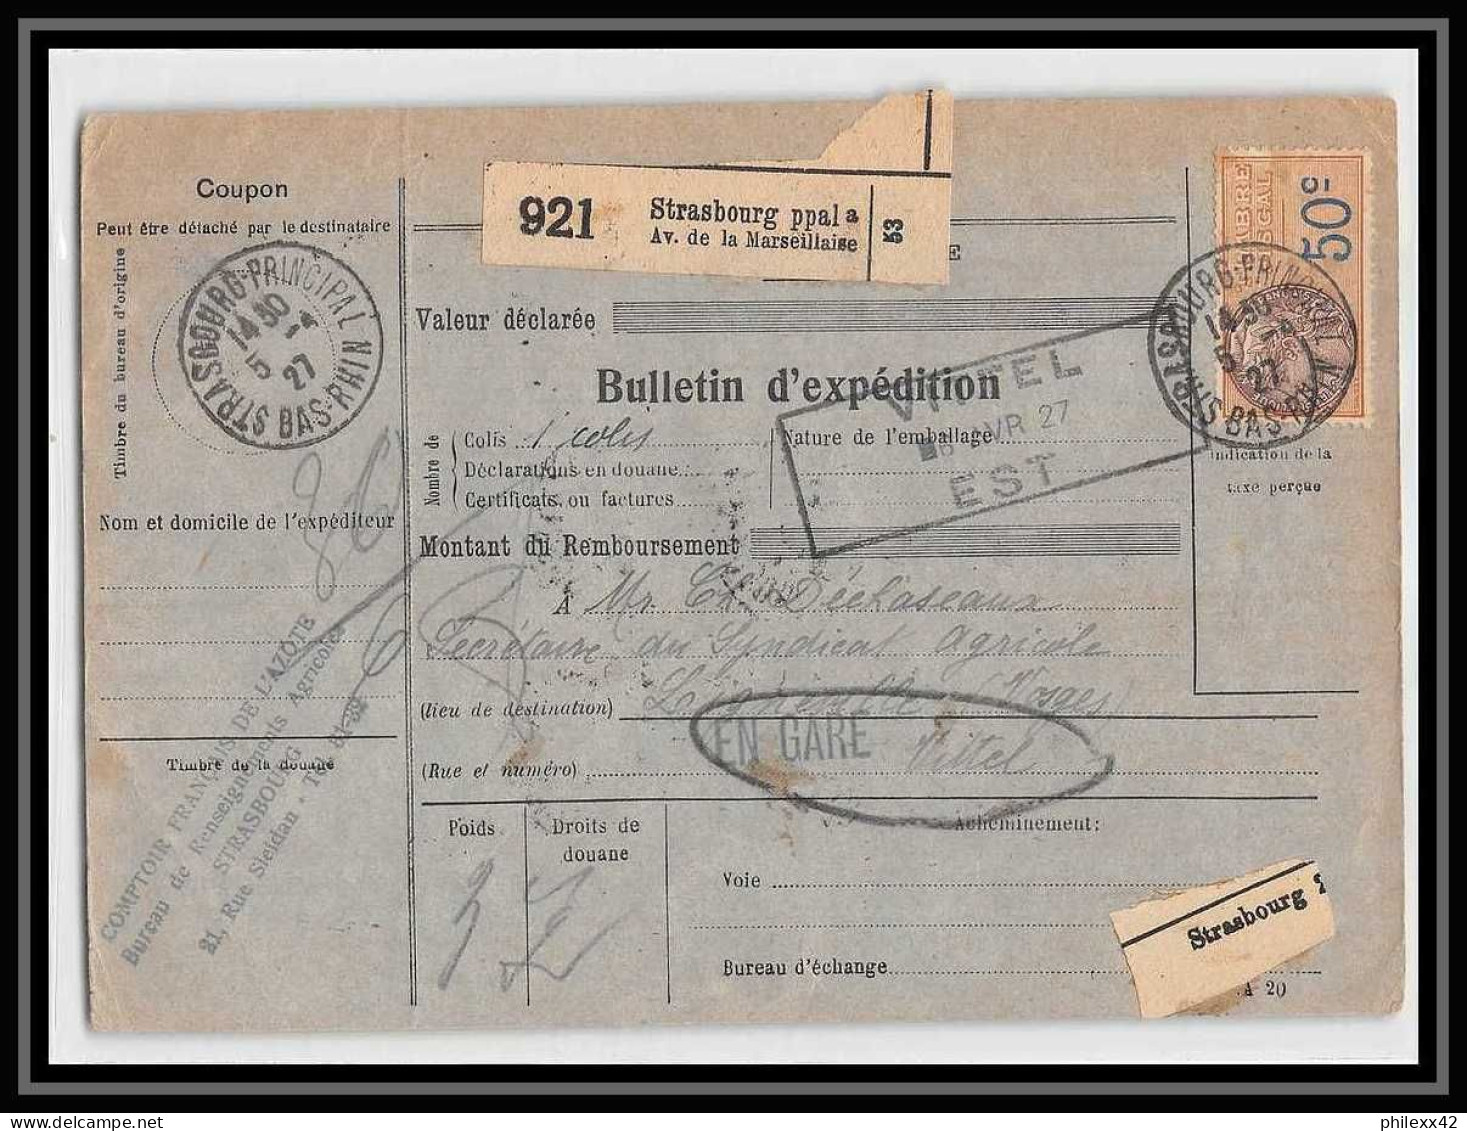 25270/ Bulletin D'expédition France Colis Postaux Fiscal Strasbourg Ppal Pour Lignéville Vosges En Gare 1927 Merson 145 - Brieven & Documenten